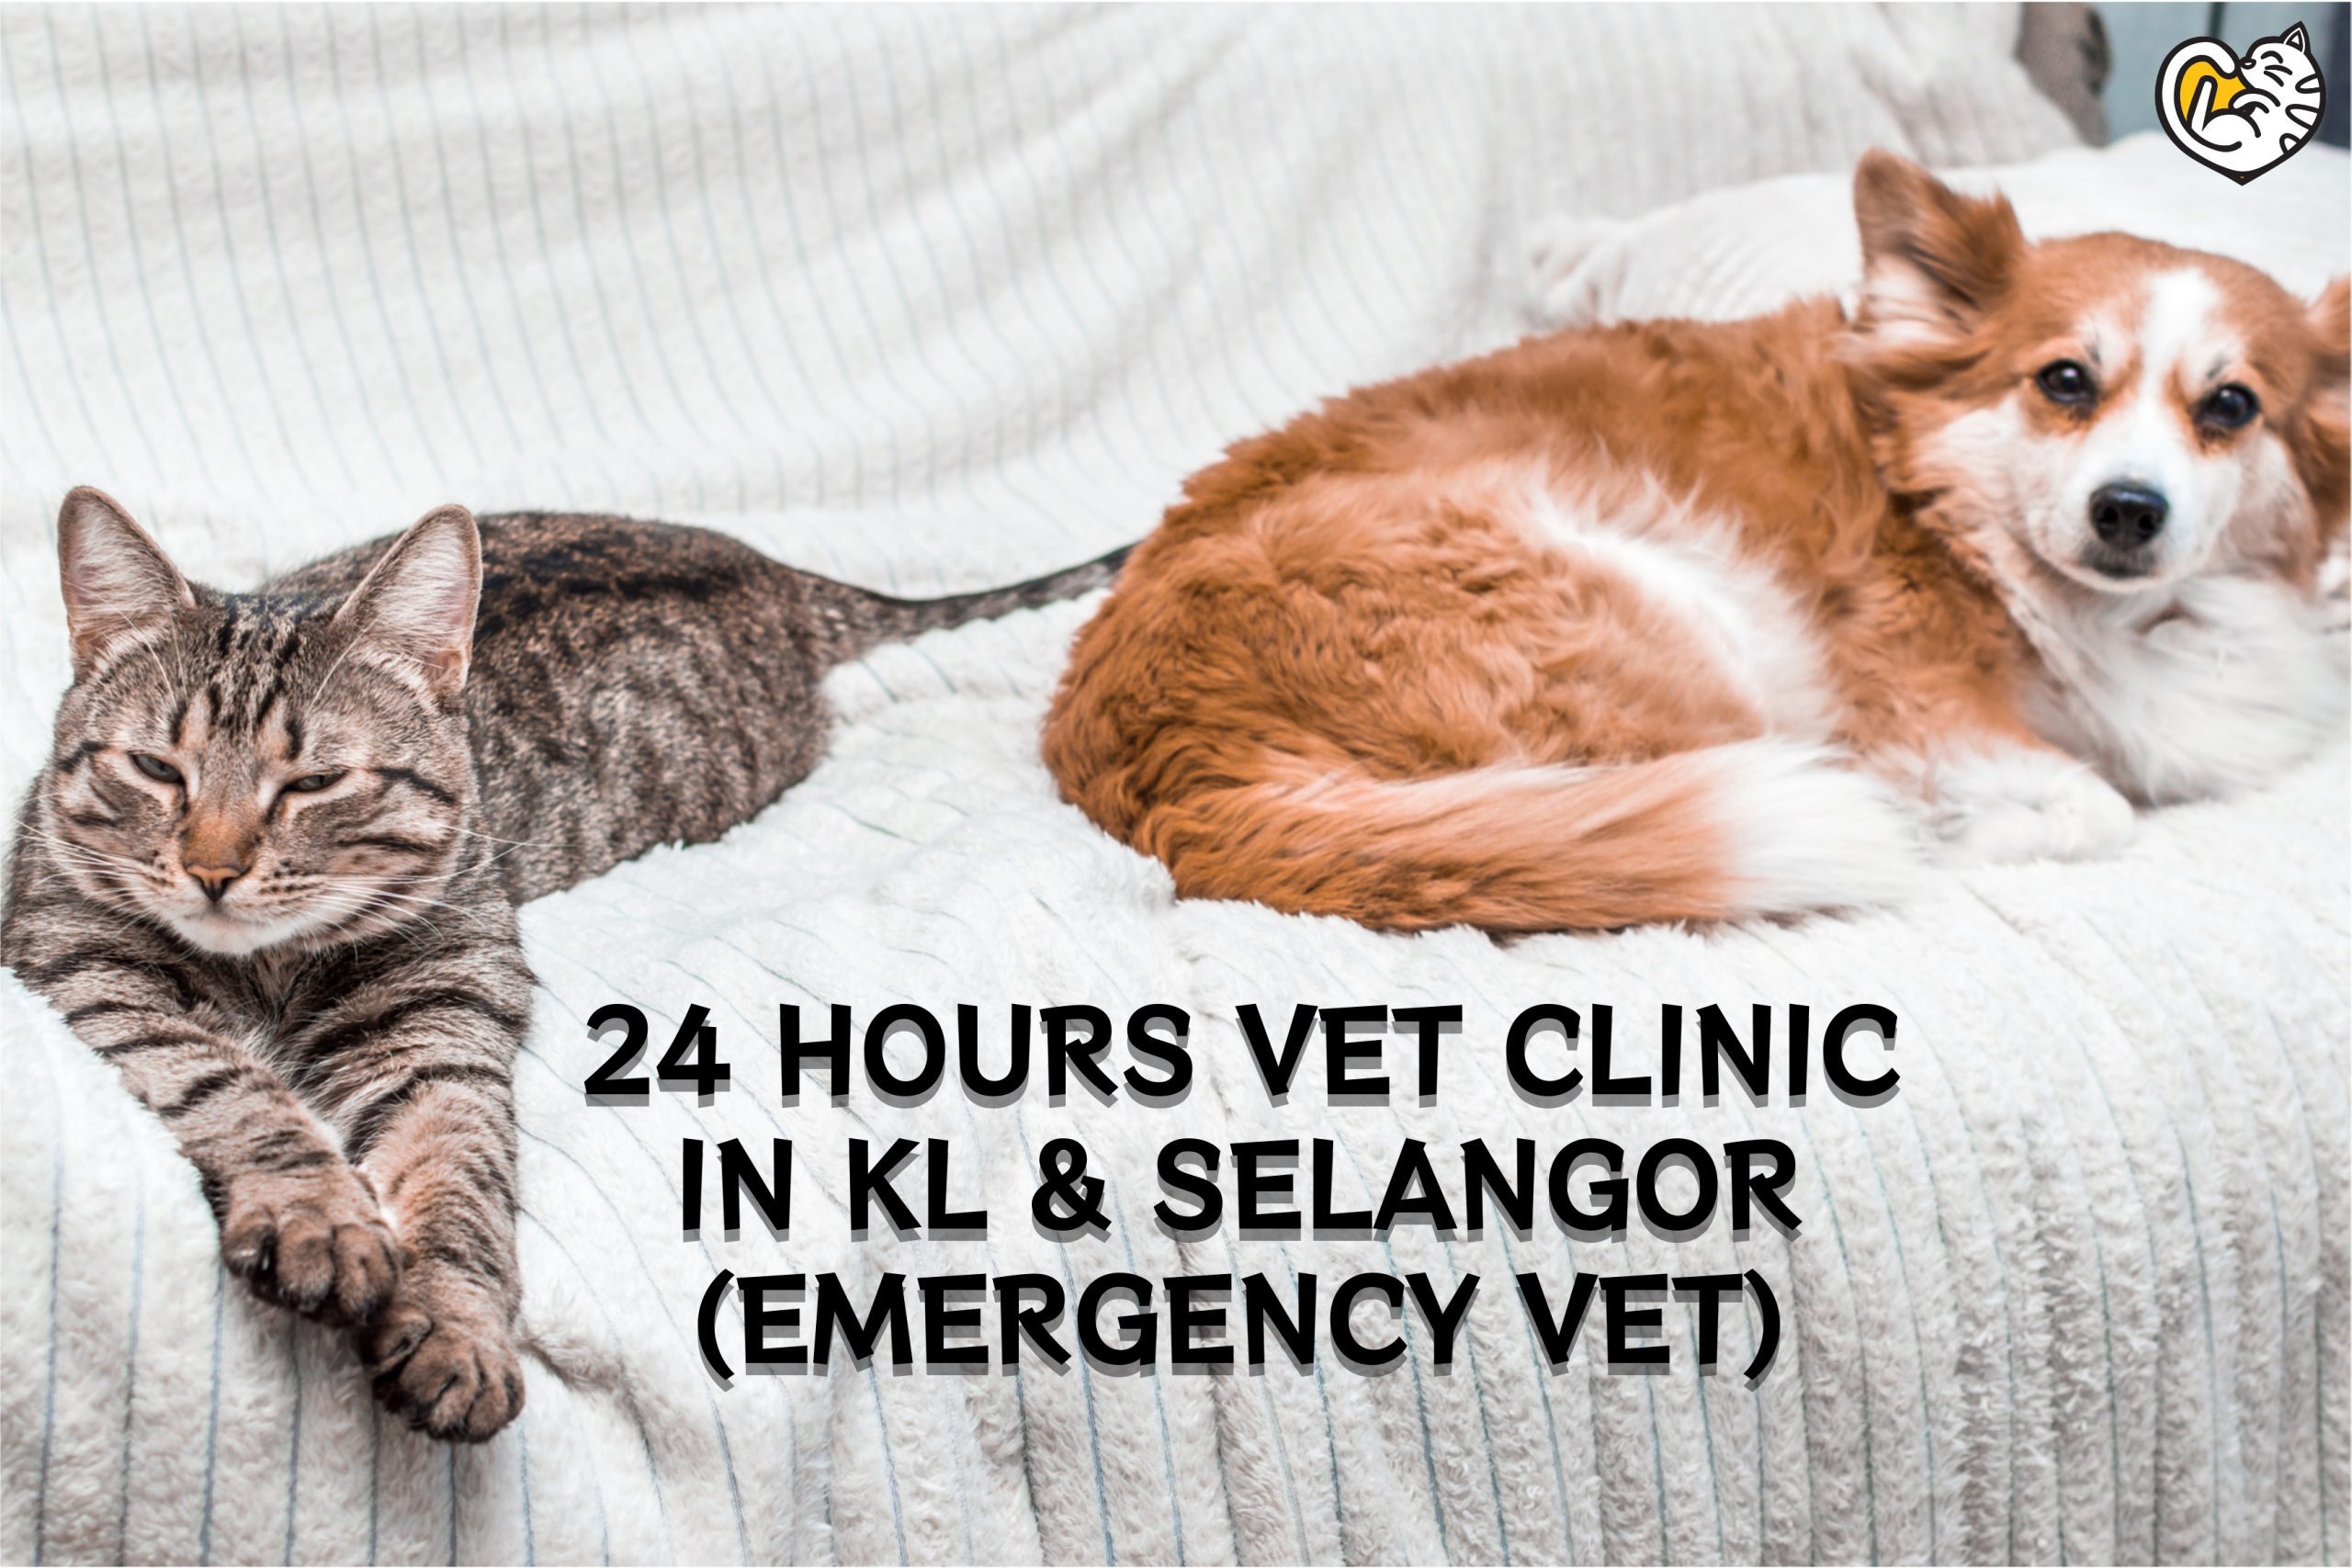 24 Hours Vet Clinics in KL & Selangor (Emergency Vet) - Grace Cat